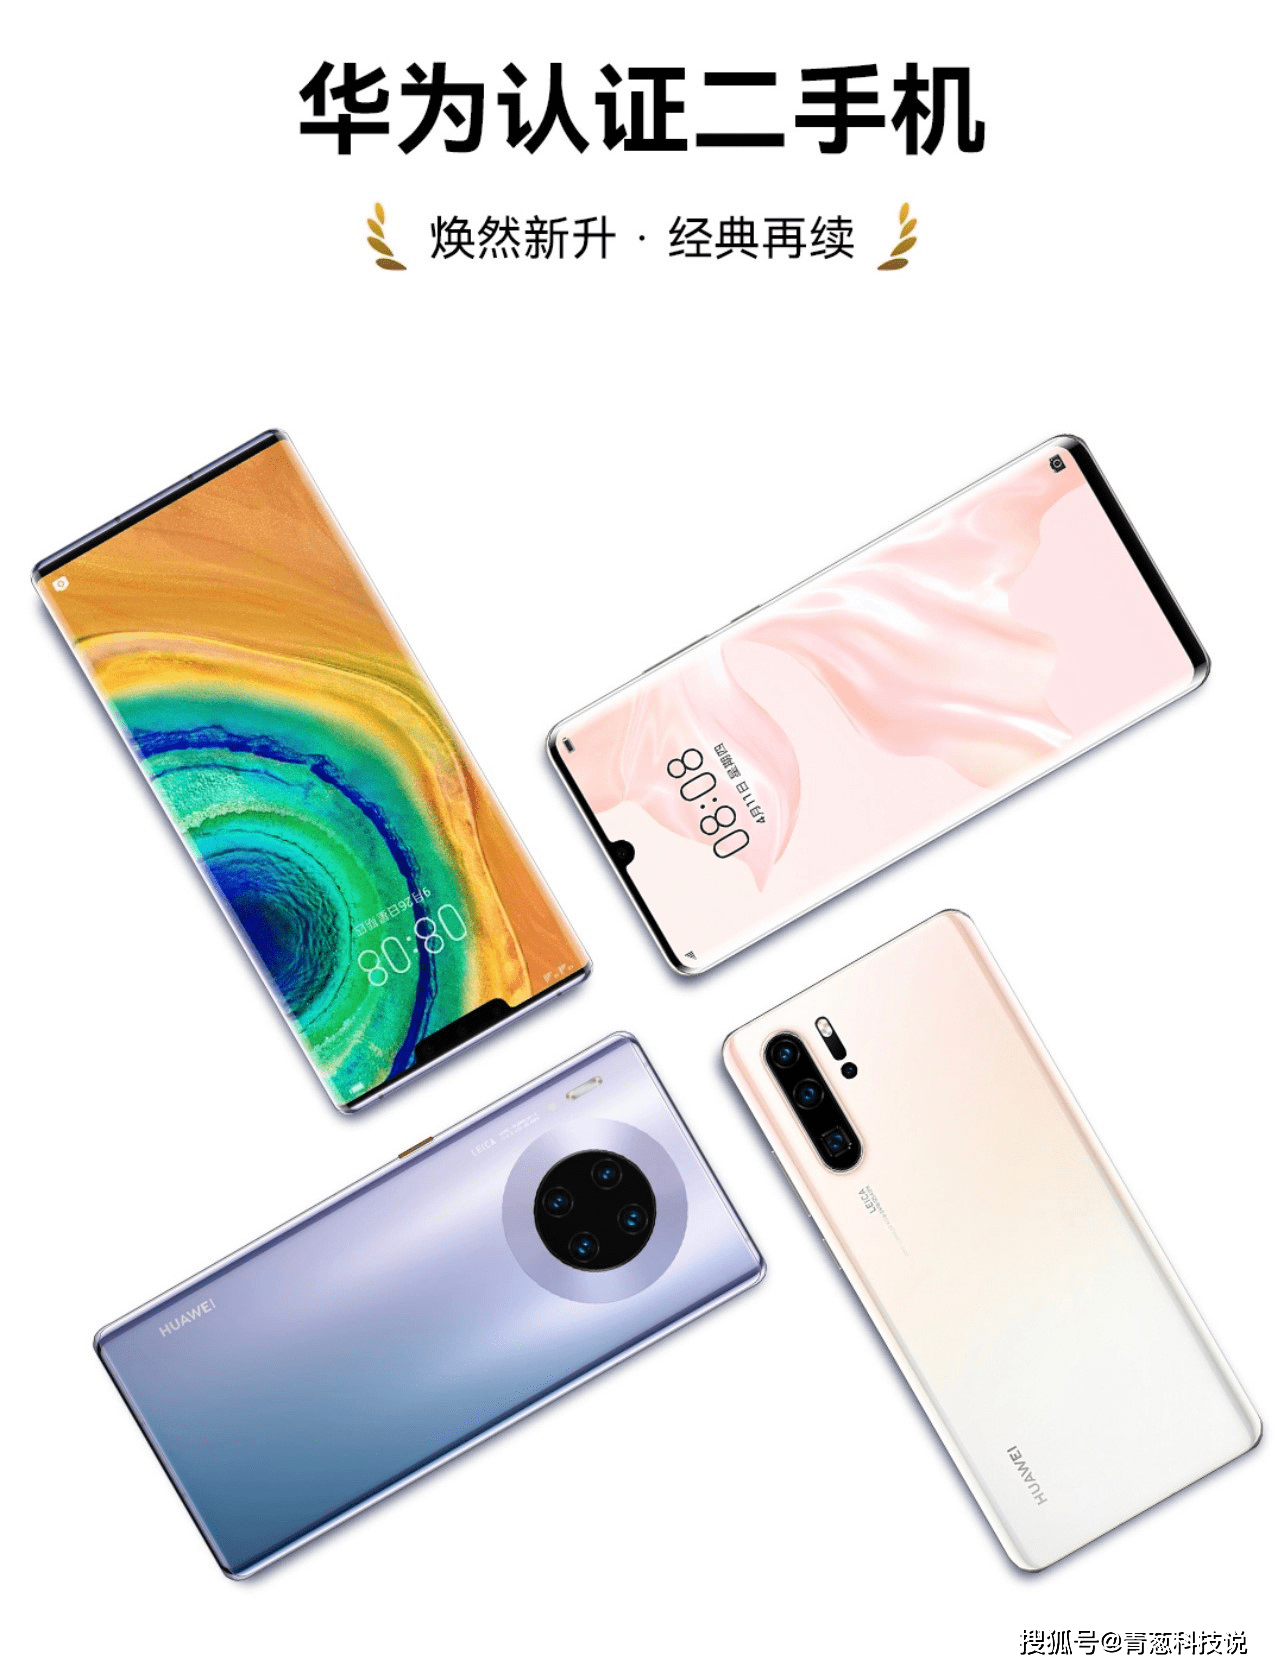 JBO竞博华为官网上架二手机搭载鸿蒙osP30售价2799元(图2)